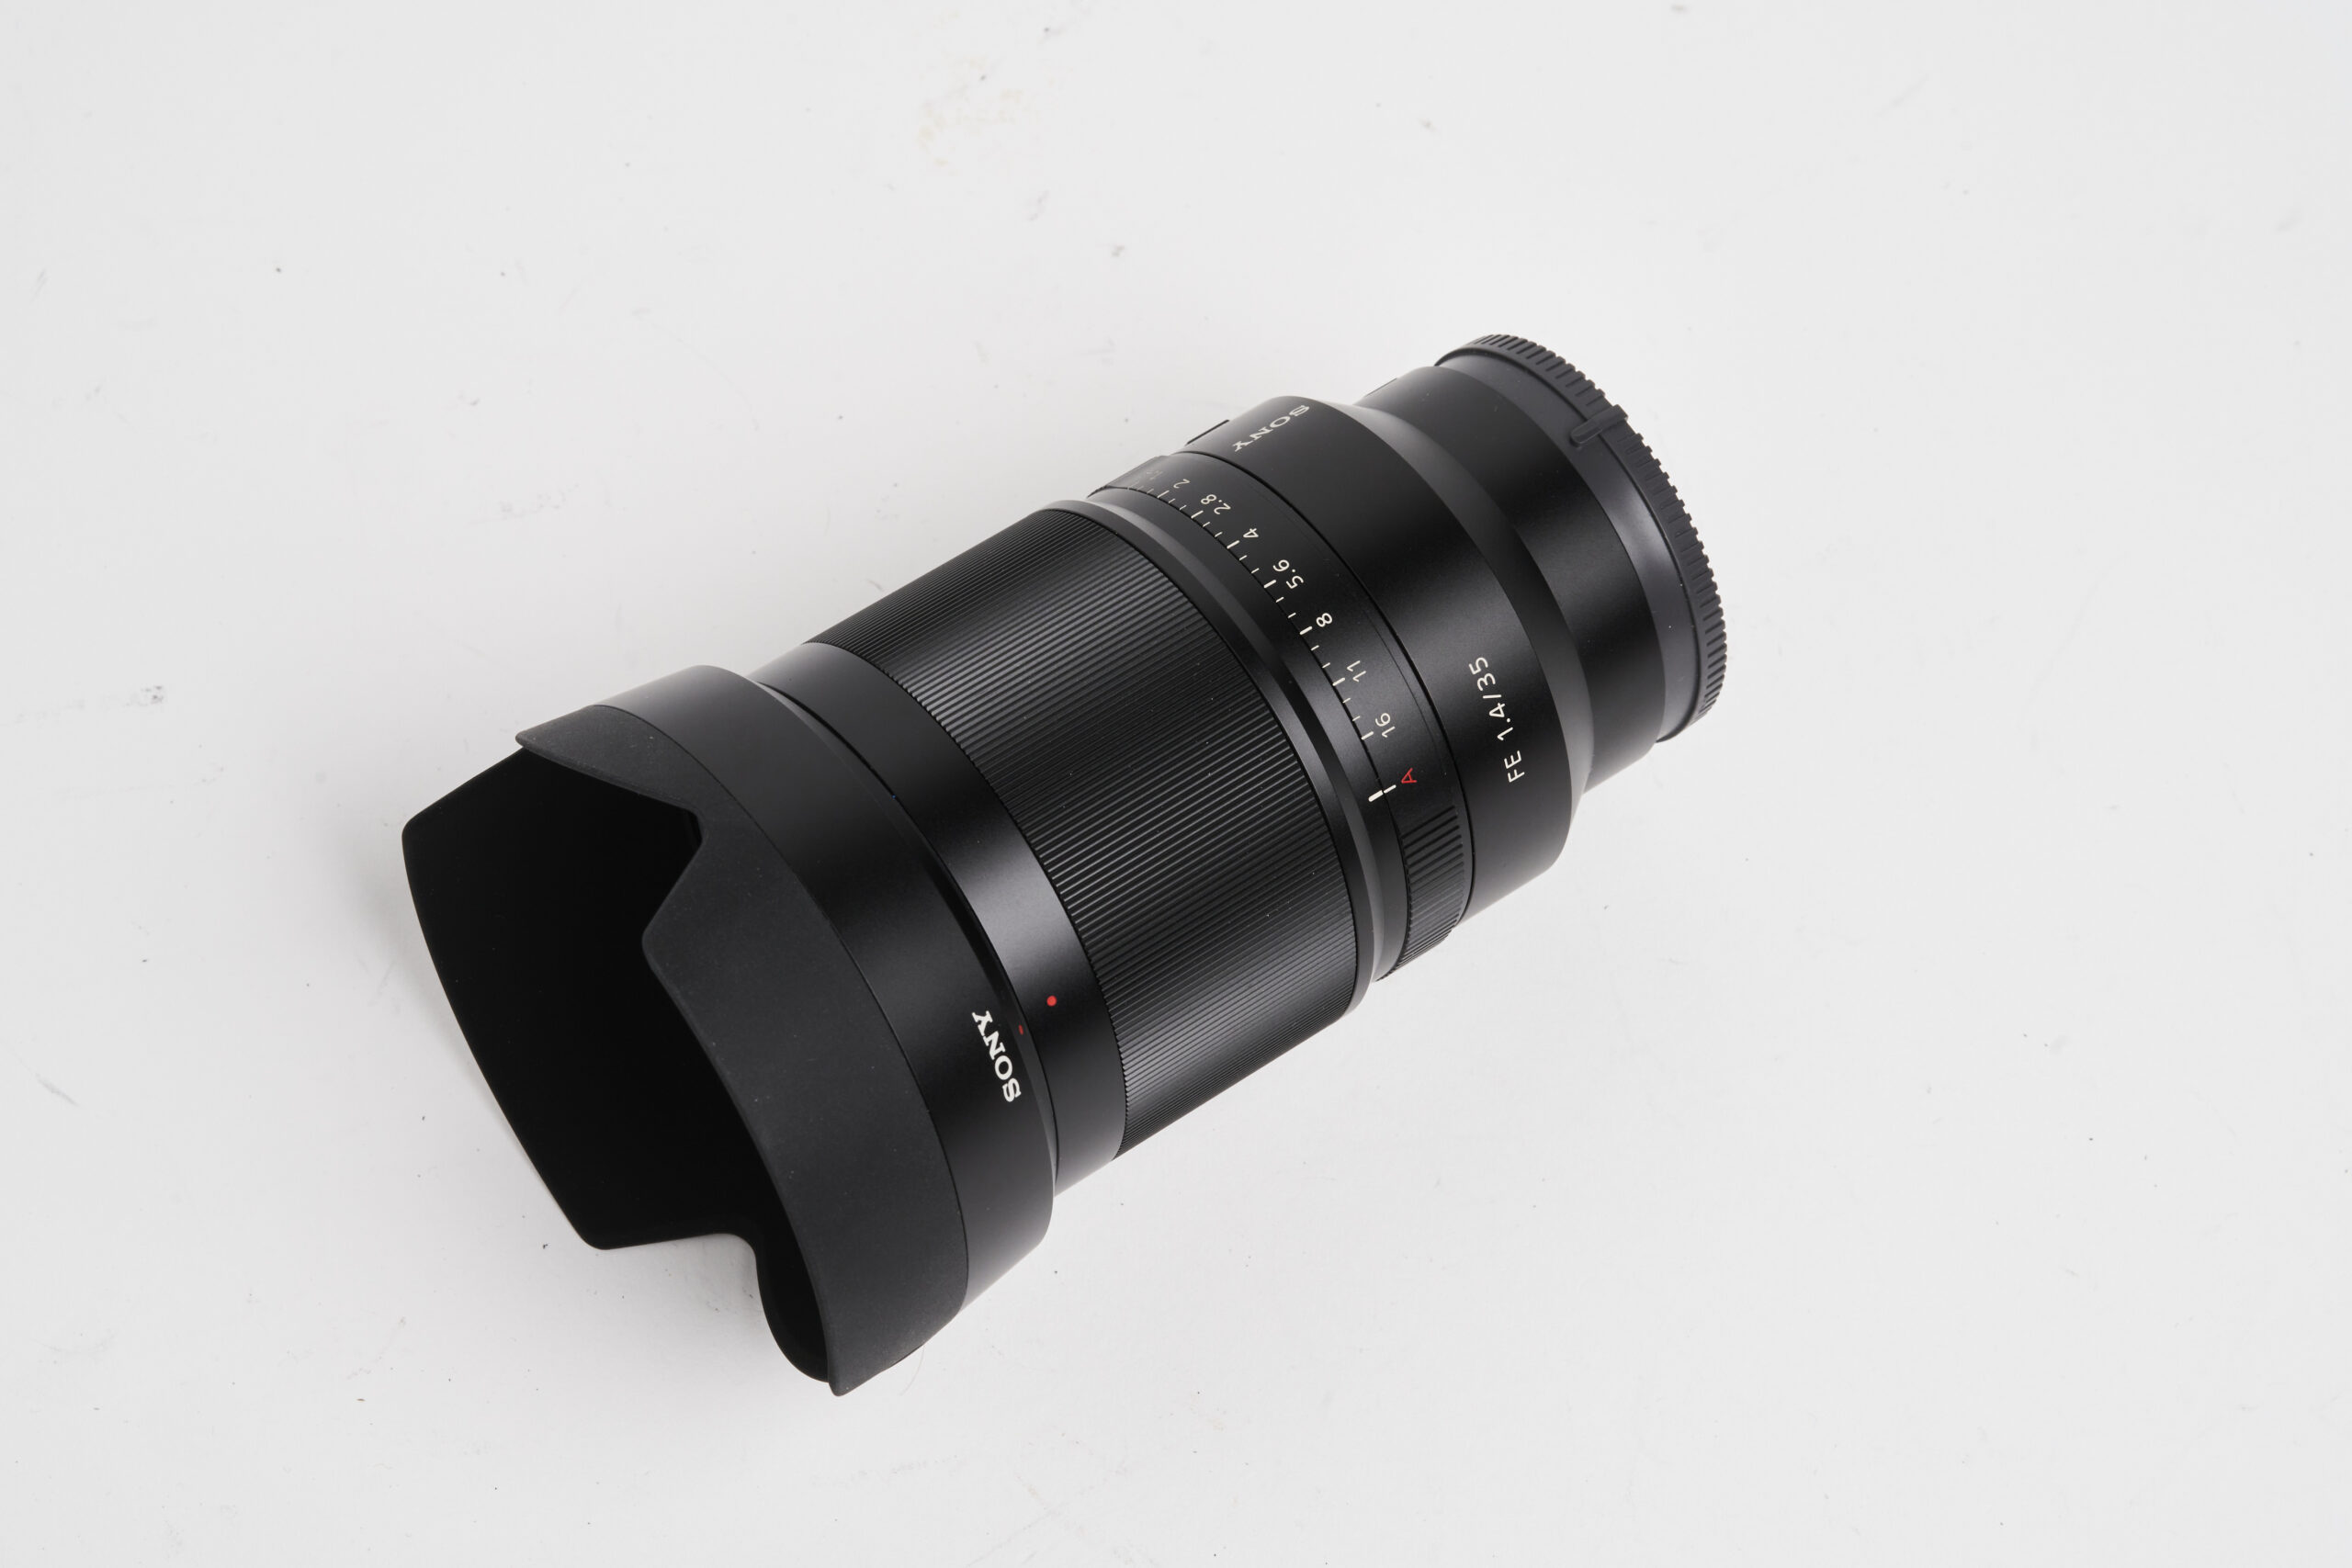 Sony-FE-35mm-F1.4-ZA-Distagon-Zeiss